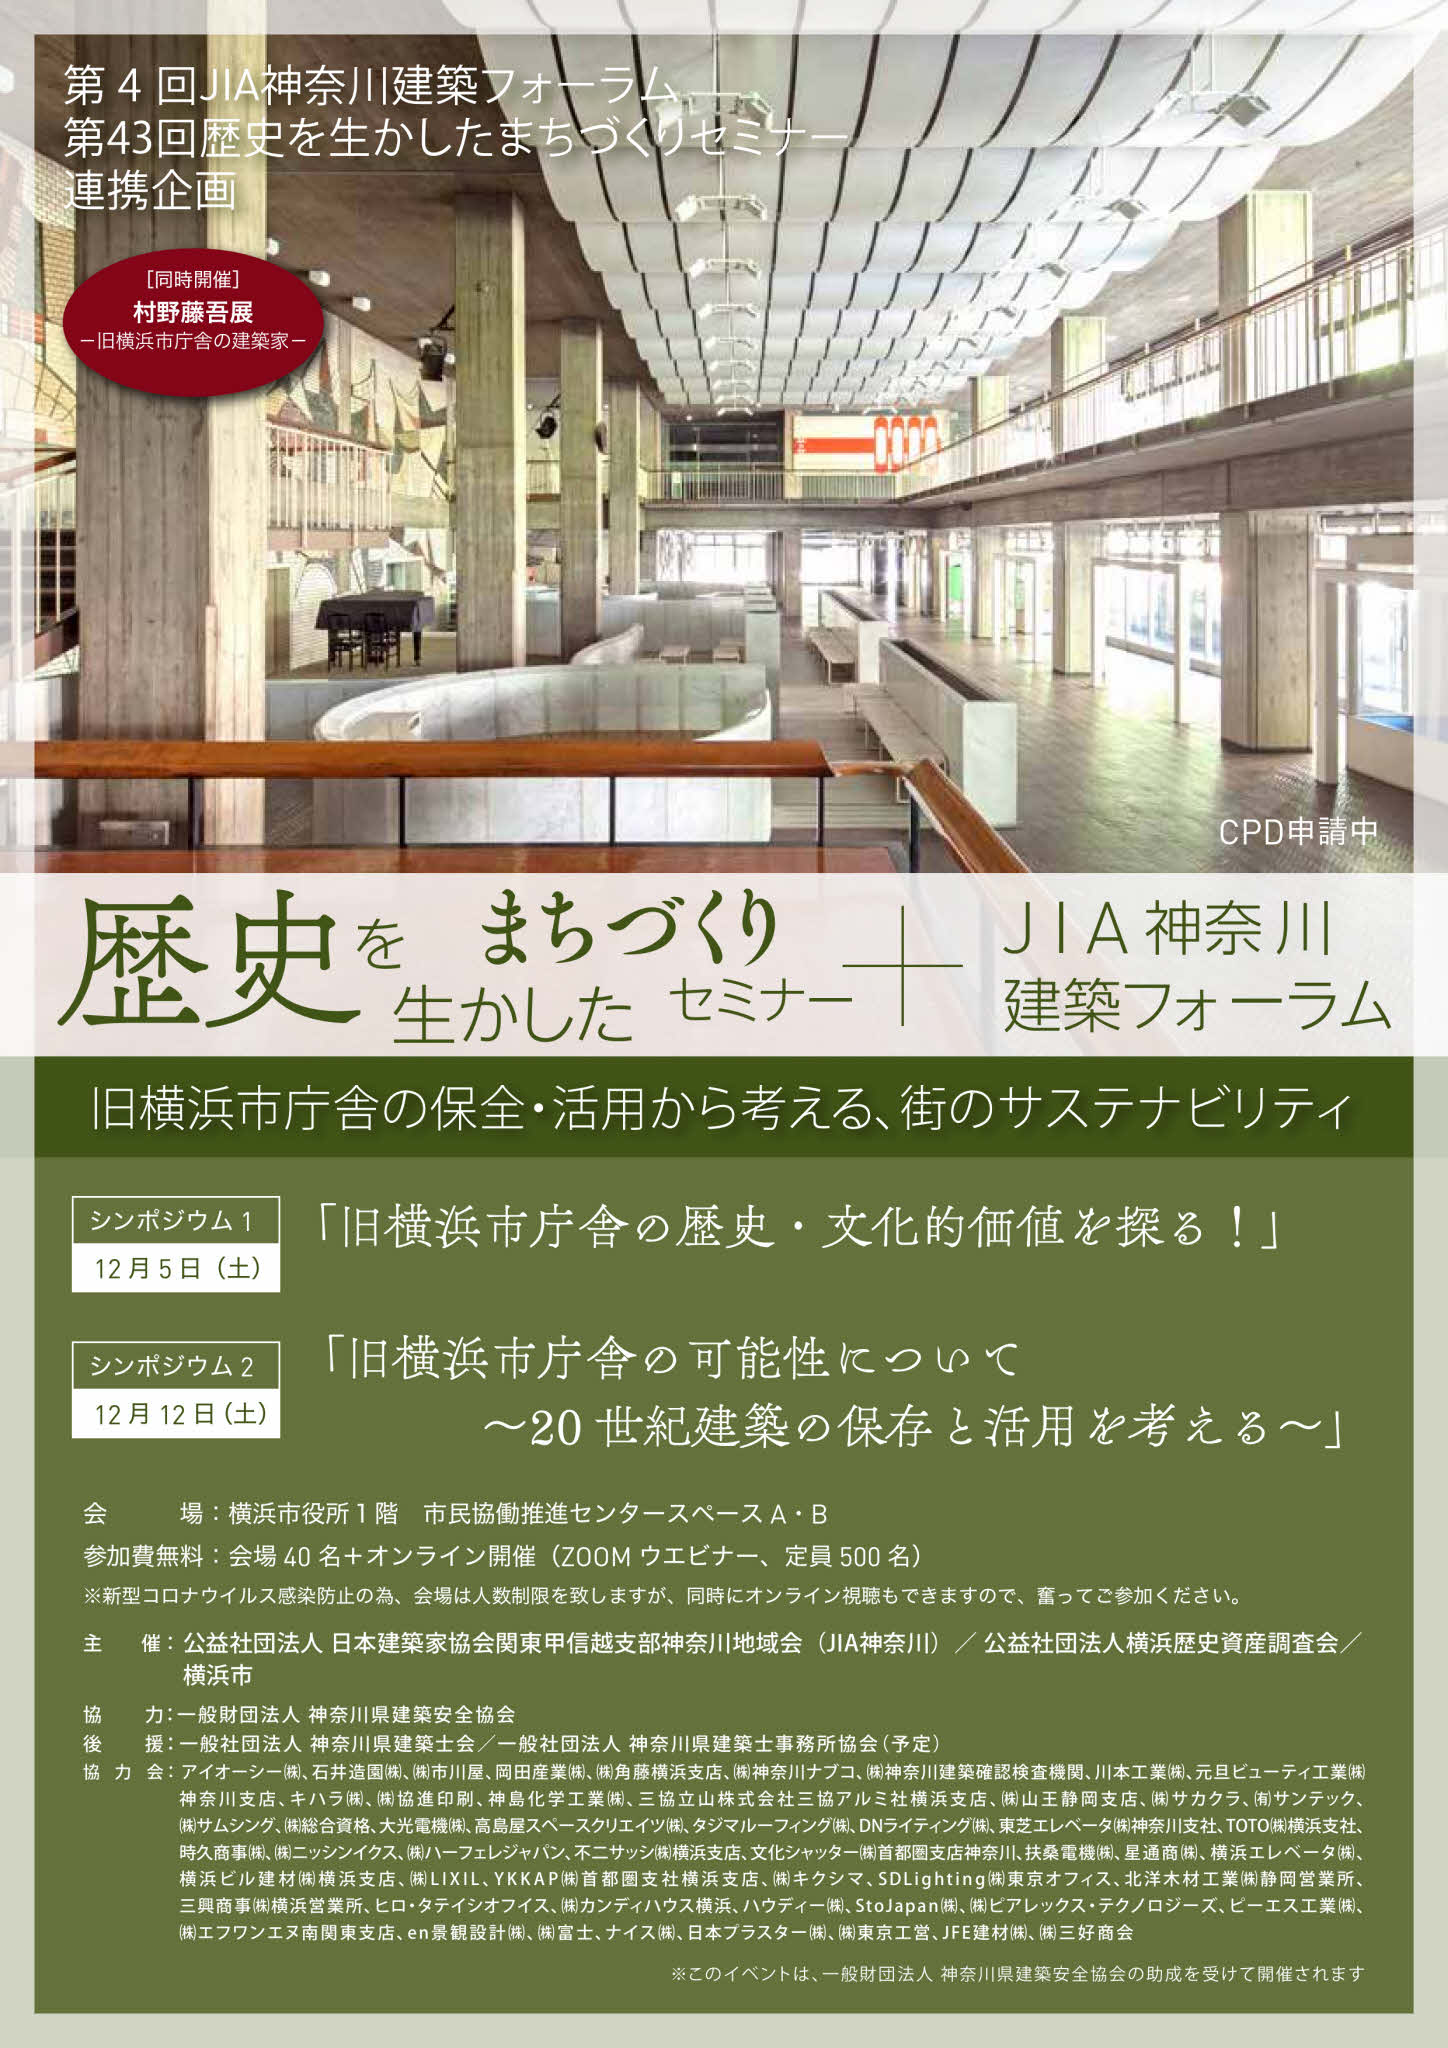 歴史を生かしたまちづくりセミナー＋ＪＩＡ神奈川建築フォーラム [シンポ1 12月5日・ シンポ2 12月12日]開催のお知らせ